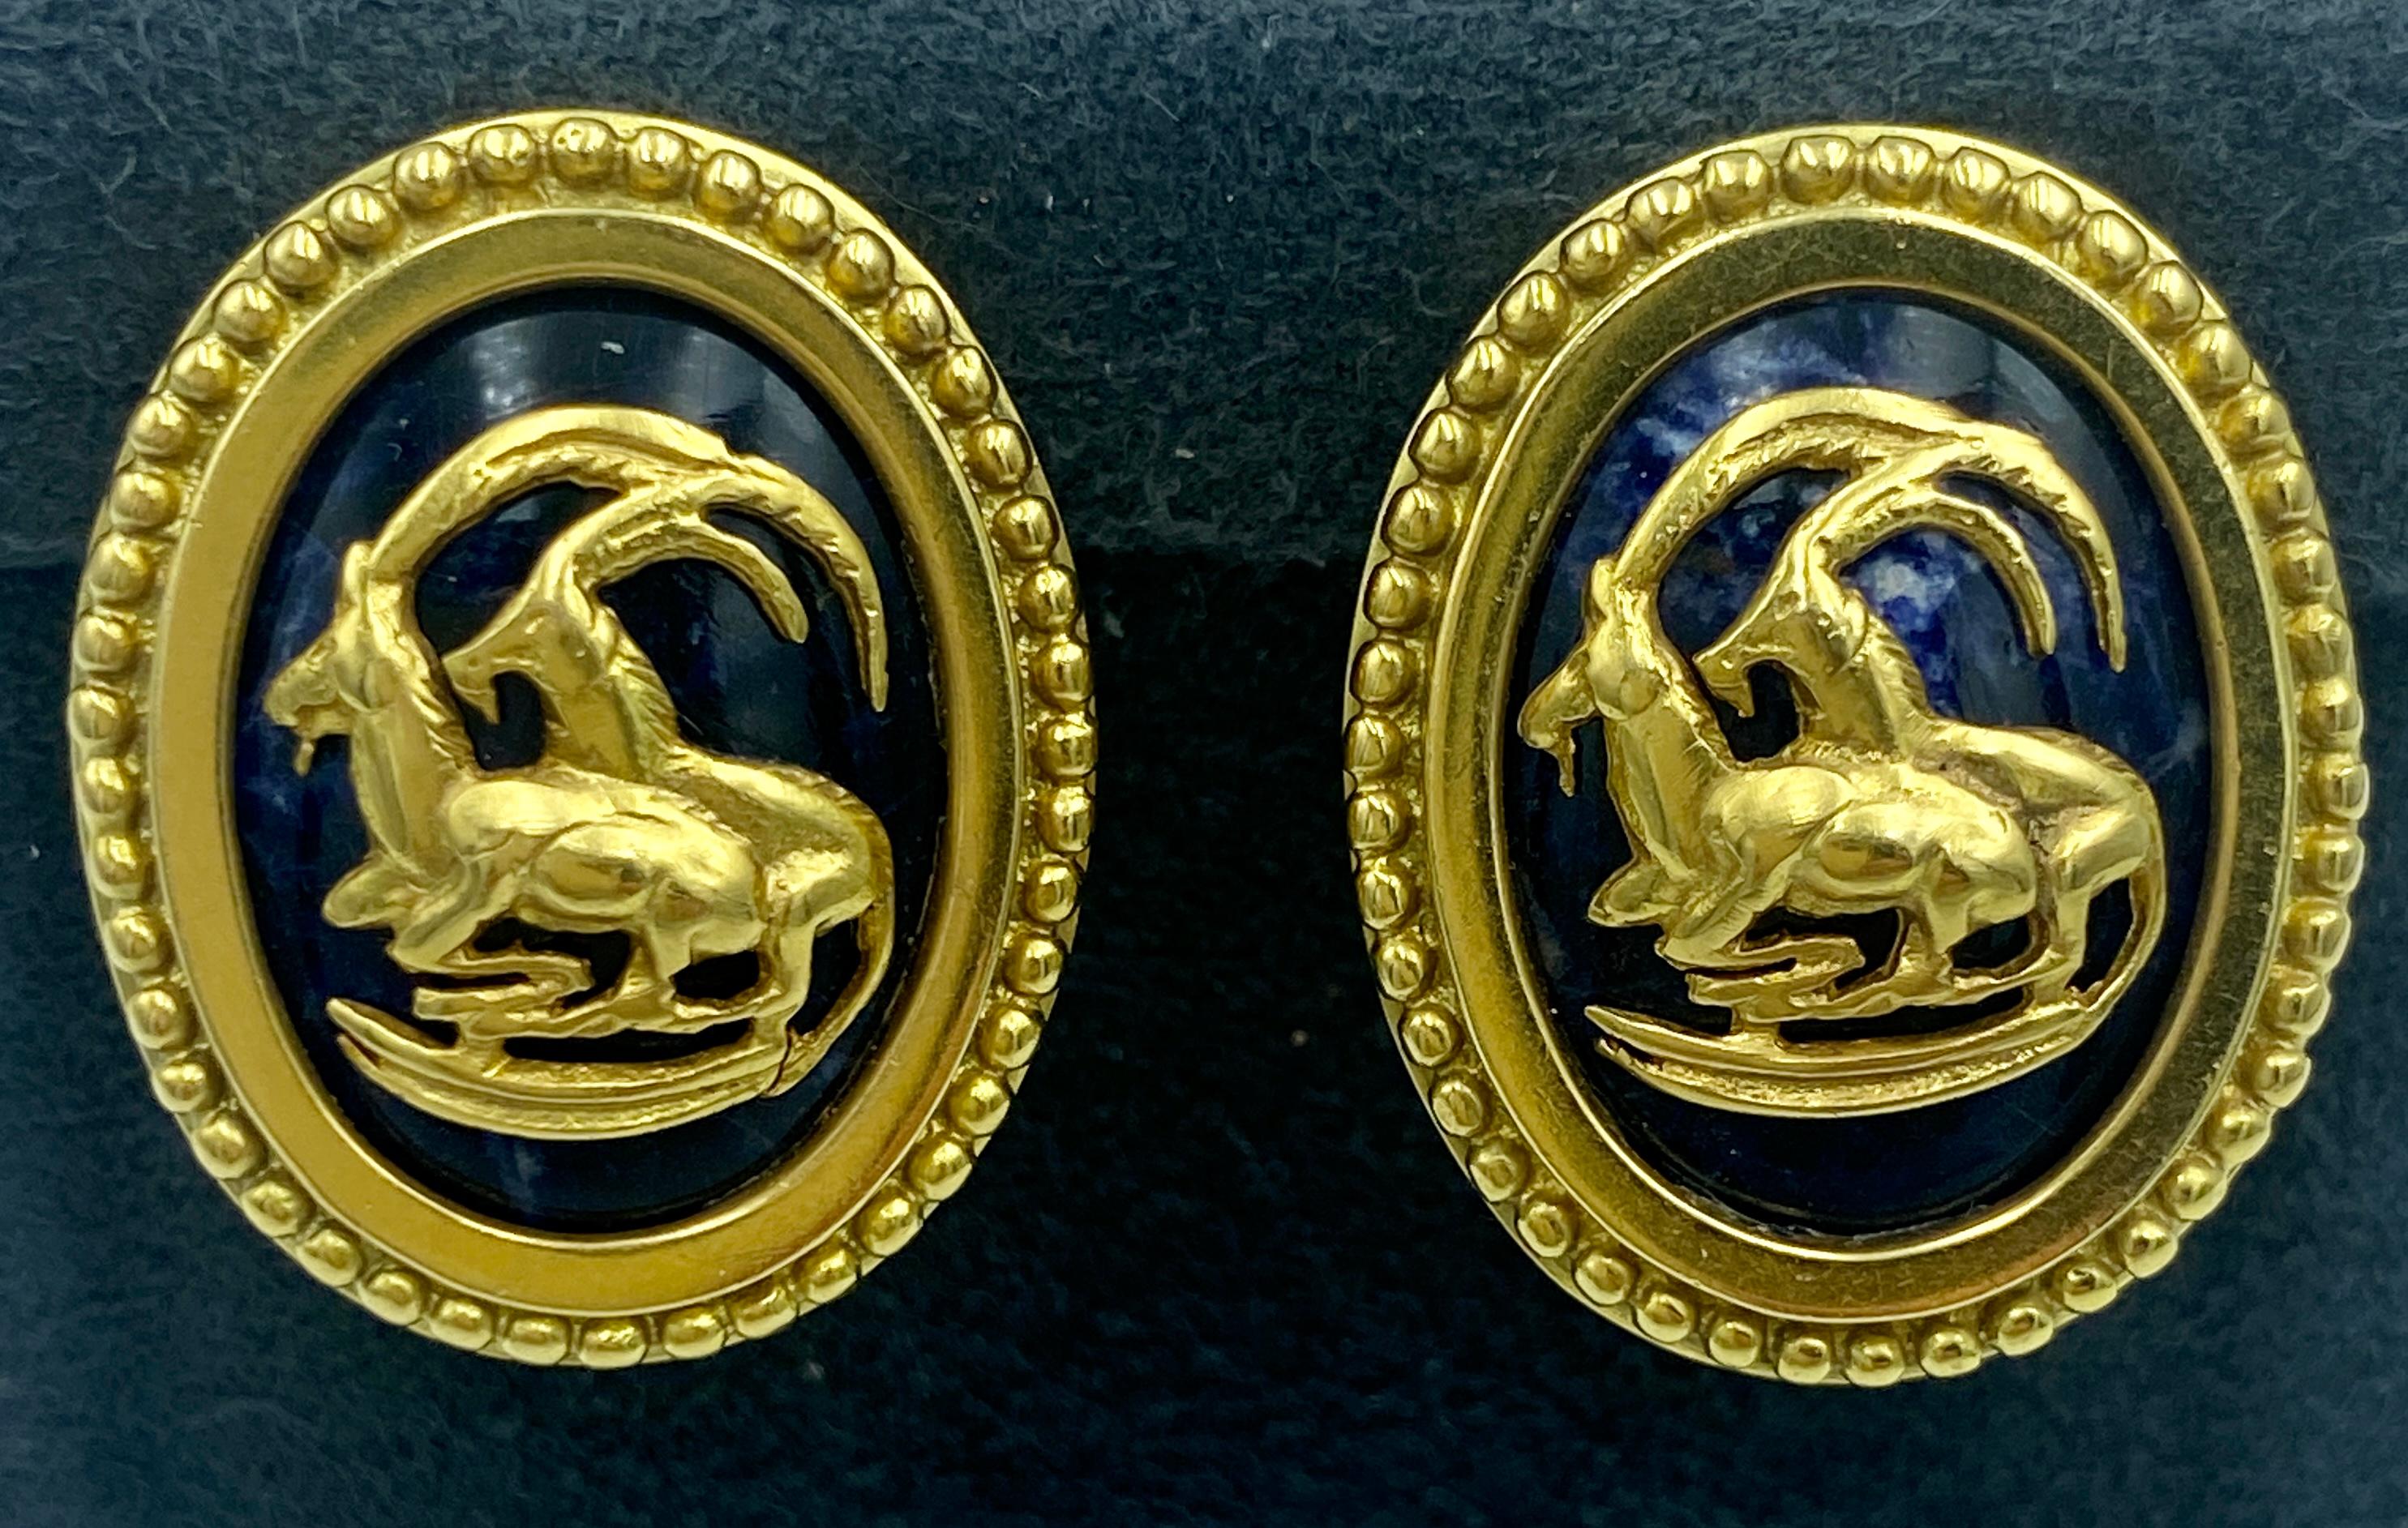 Ces boucles d'oreilles à pince de Lalaounis des années 1970 ont la forme de médaillons ornés de motifs de chèvres de montagne. Réalisé en or 18 carats, le design est centré sur un cabochon de lapis-lazuli.

Ils font partie d'un ensemble avec un